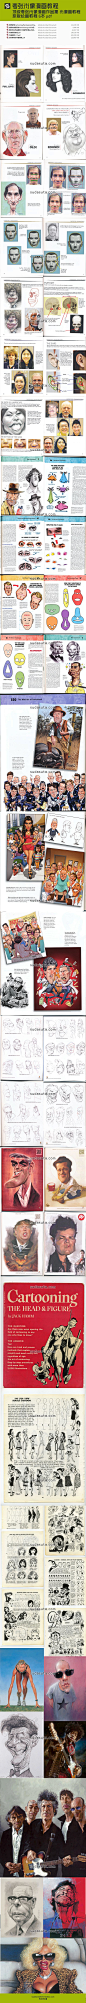 夸张漫画入门教程 顶级夸张肖像漫画作品集肖像画教程 原版绘画教程6本pdf